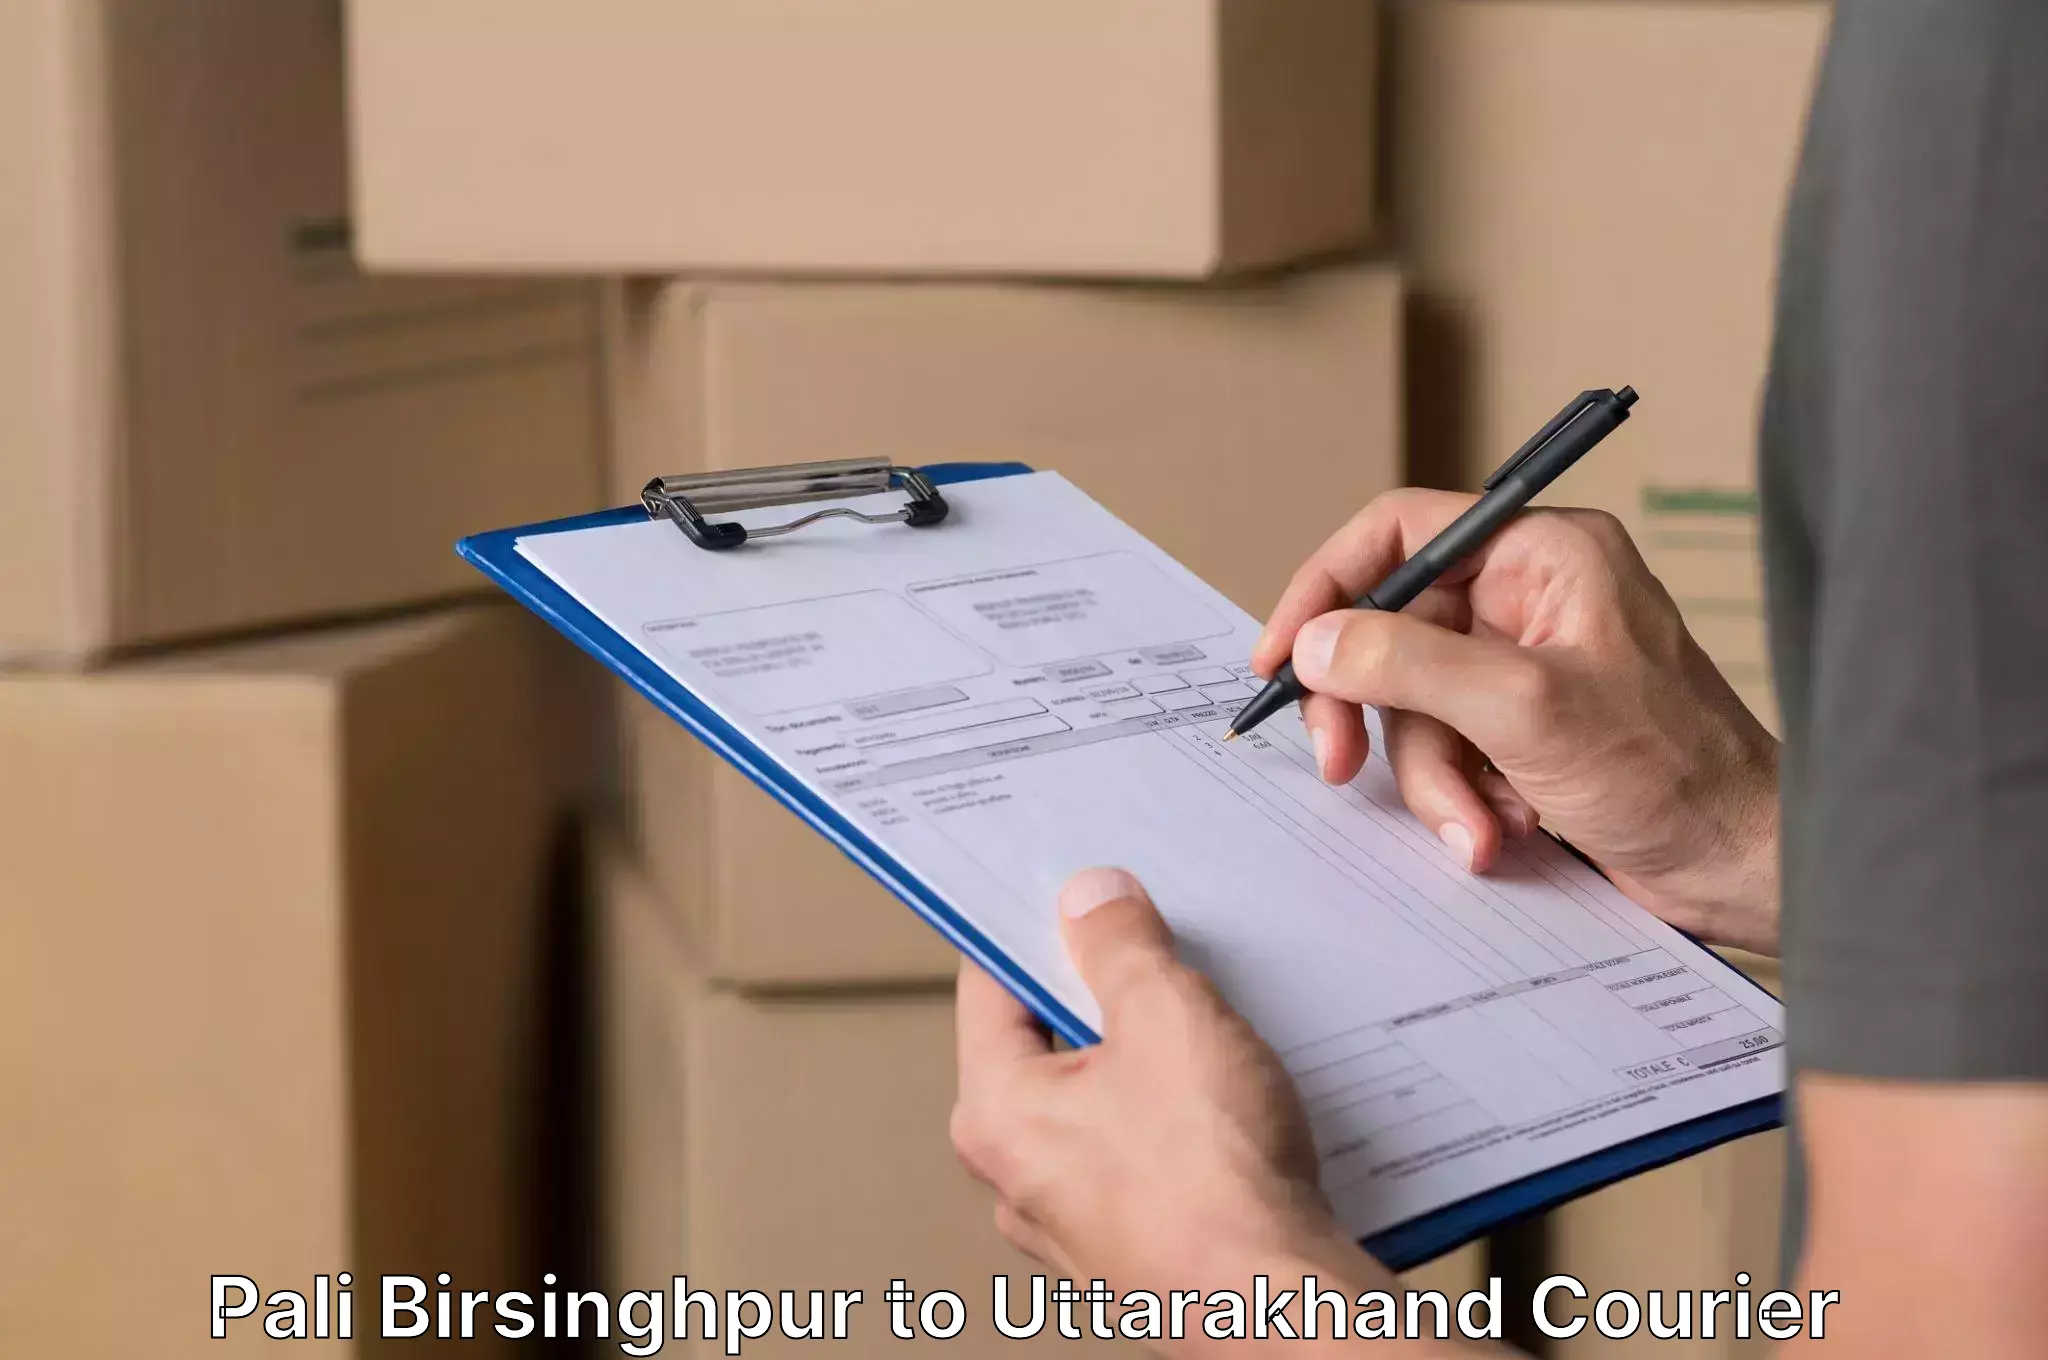 Specialized moving company Pali Birsinghpur to Kotdwara